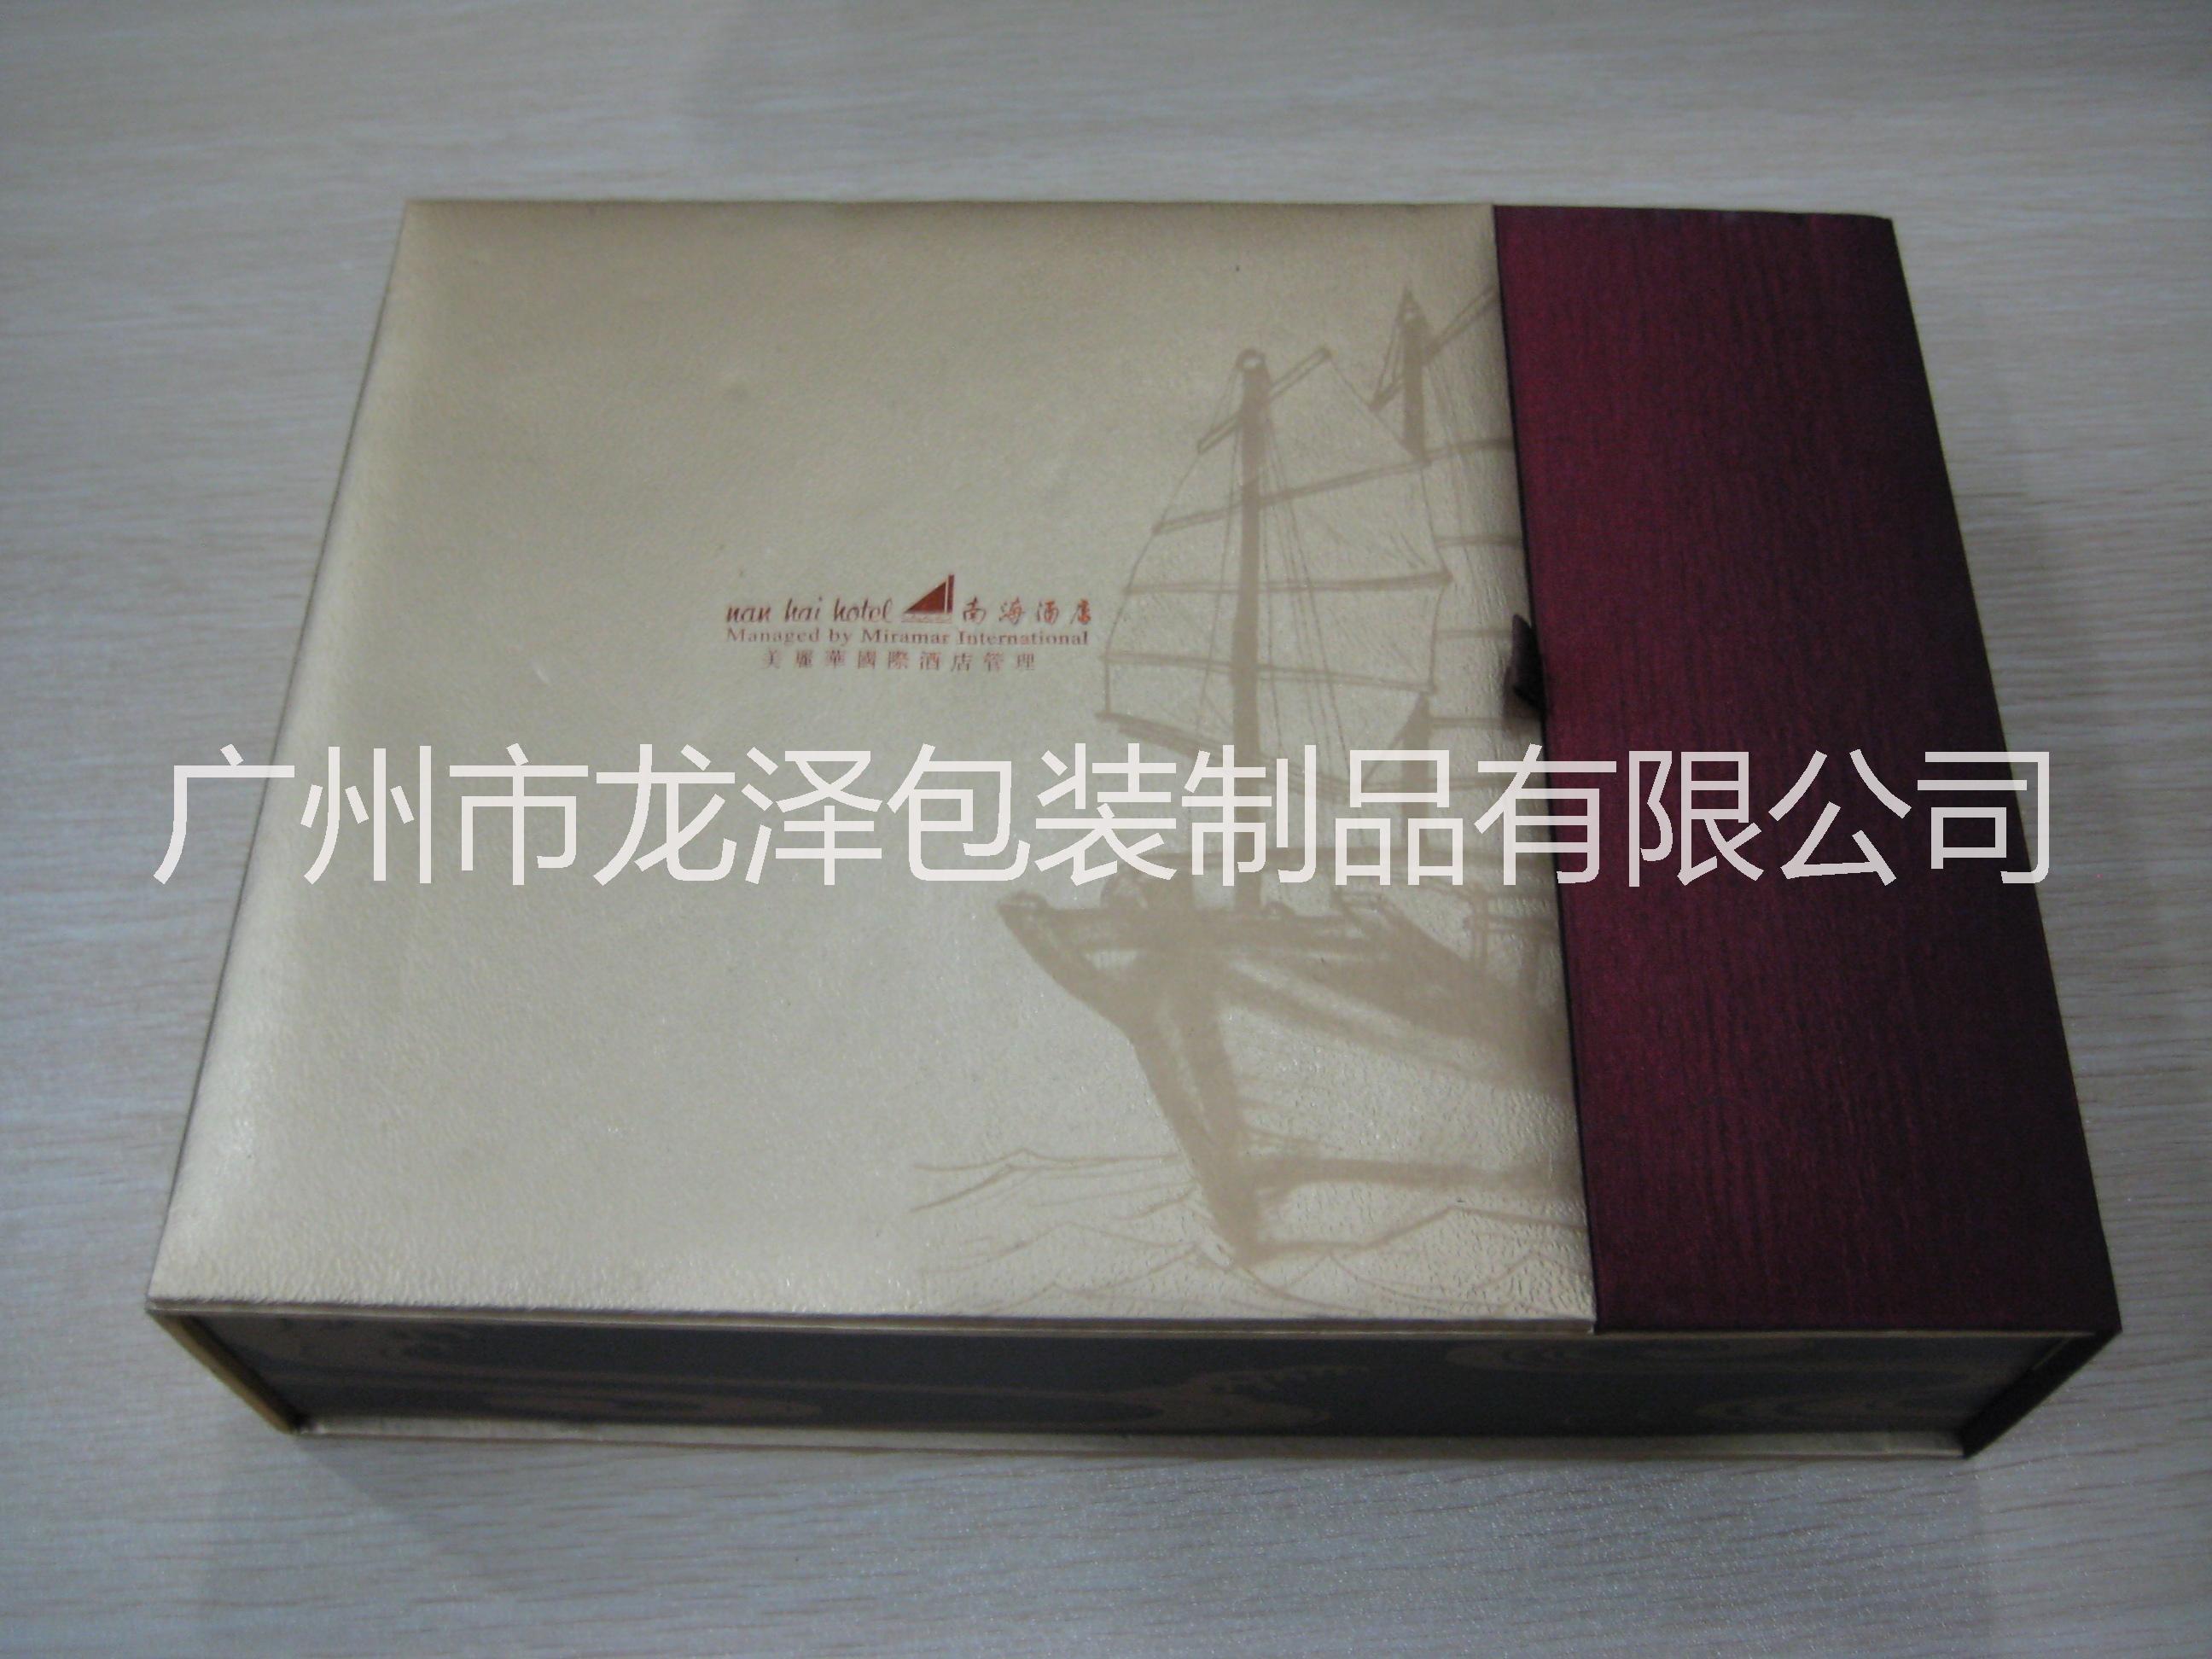 广州市广州厂家直销翻盖月饼盒厂家翻盖月饼盒 广州厂家直销翻盖月饼盒